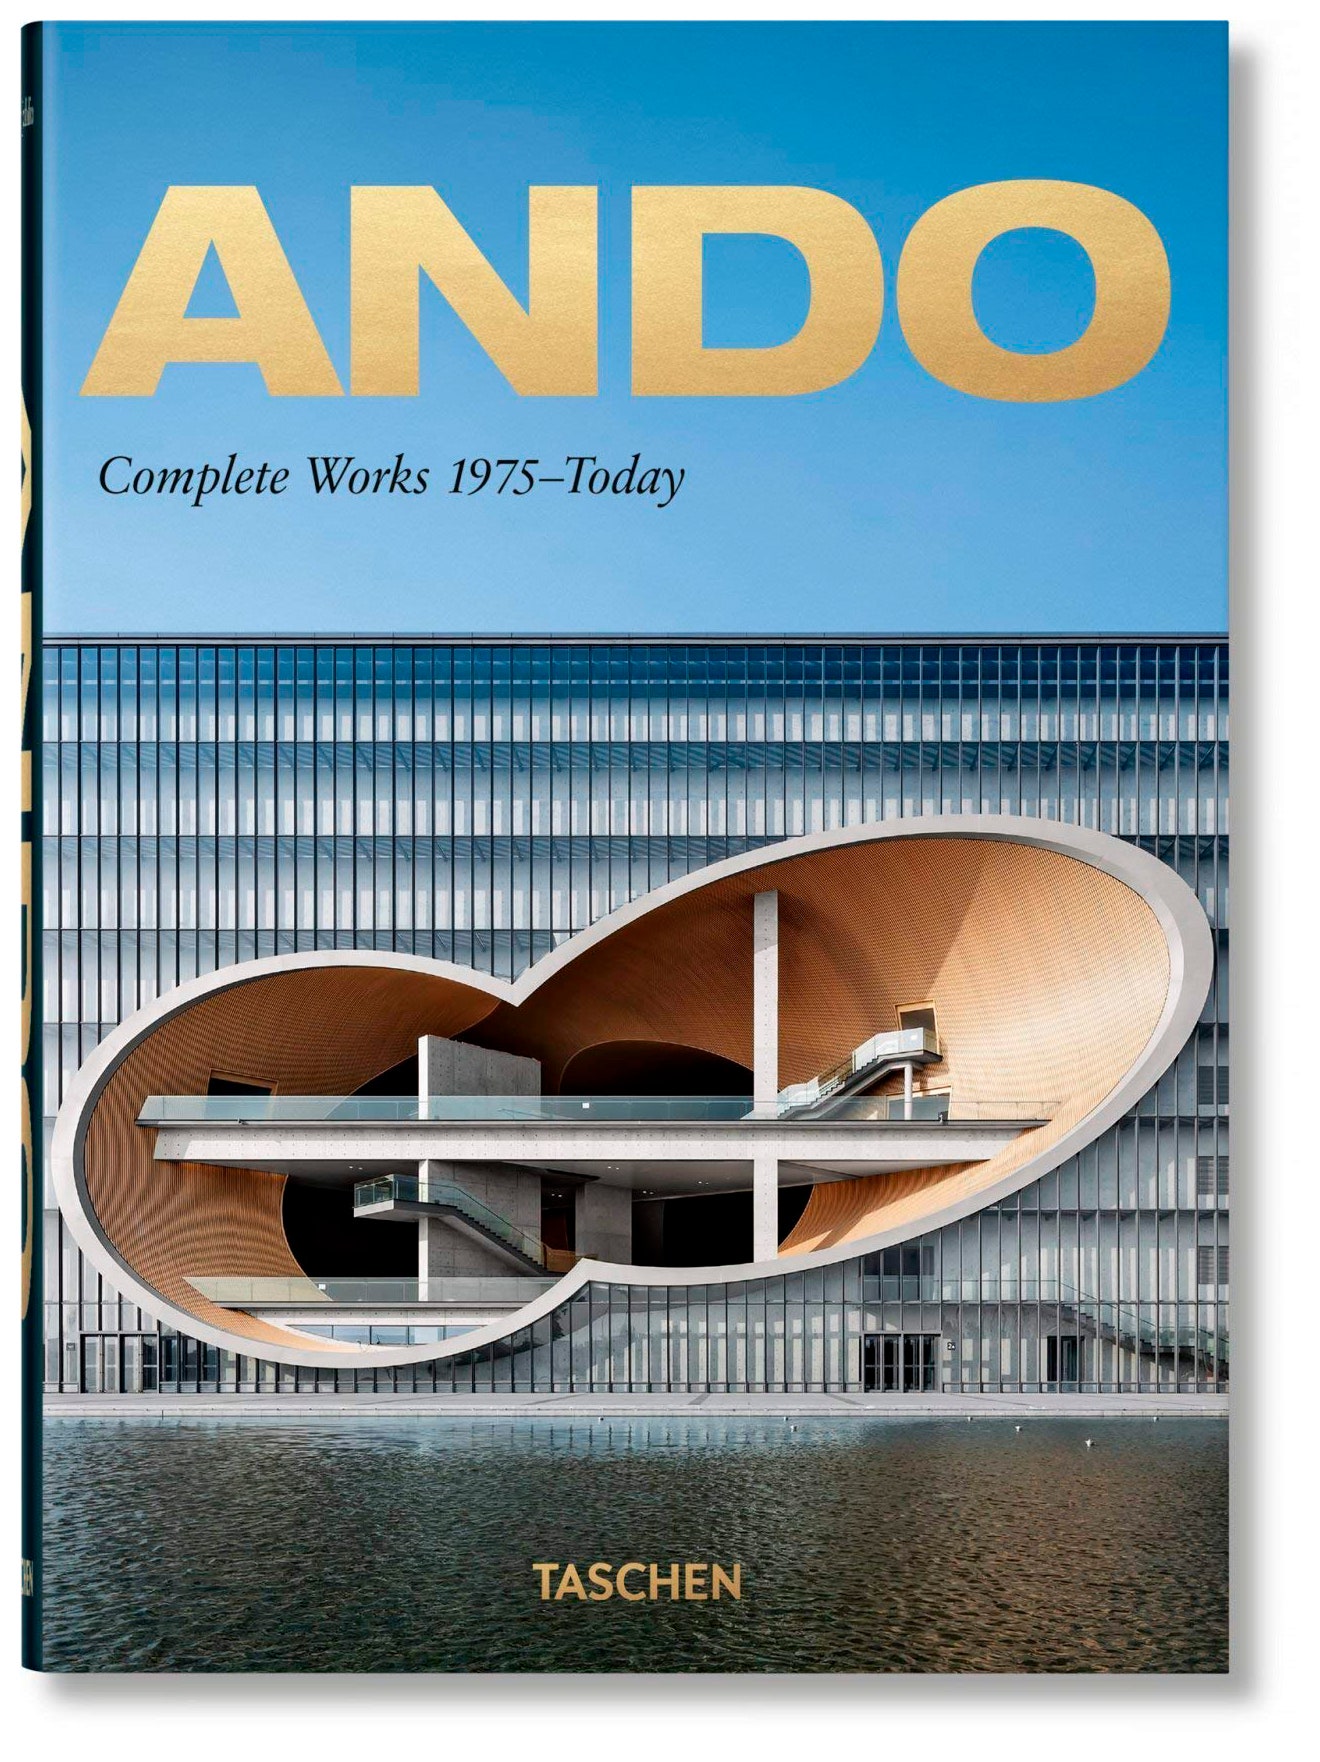 Книга Ando. Complete Works 1975Today  Taschen 2775 руб.